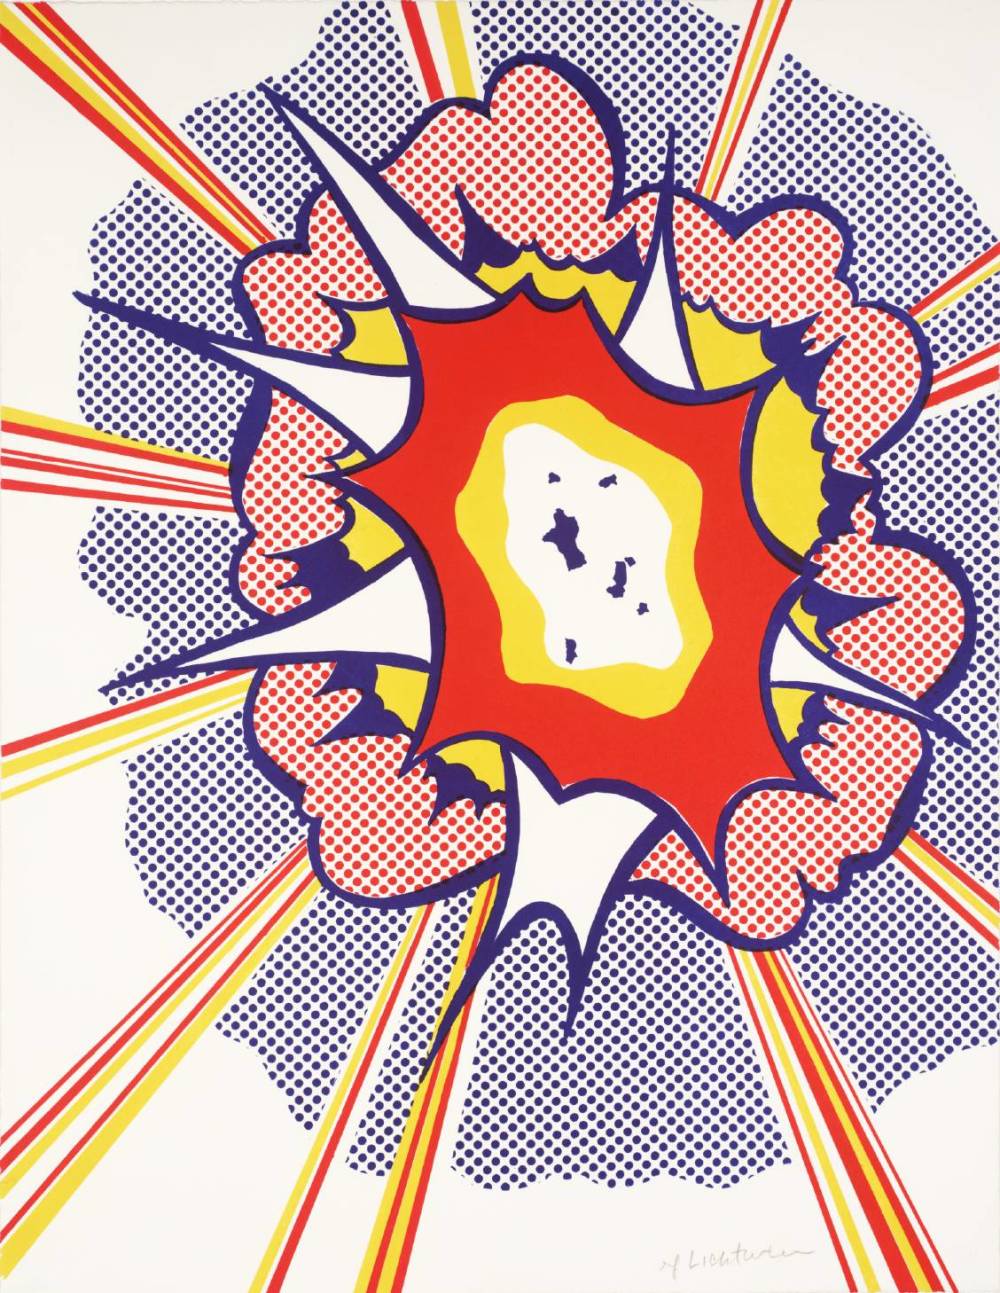  Roy Lichtenstein, Explosion, 1965-60 